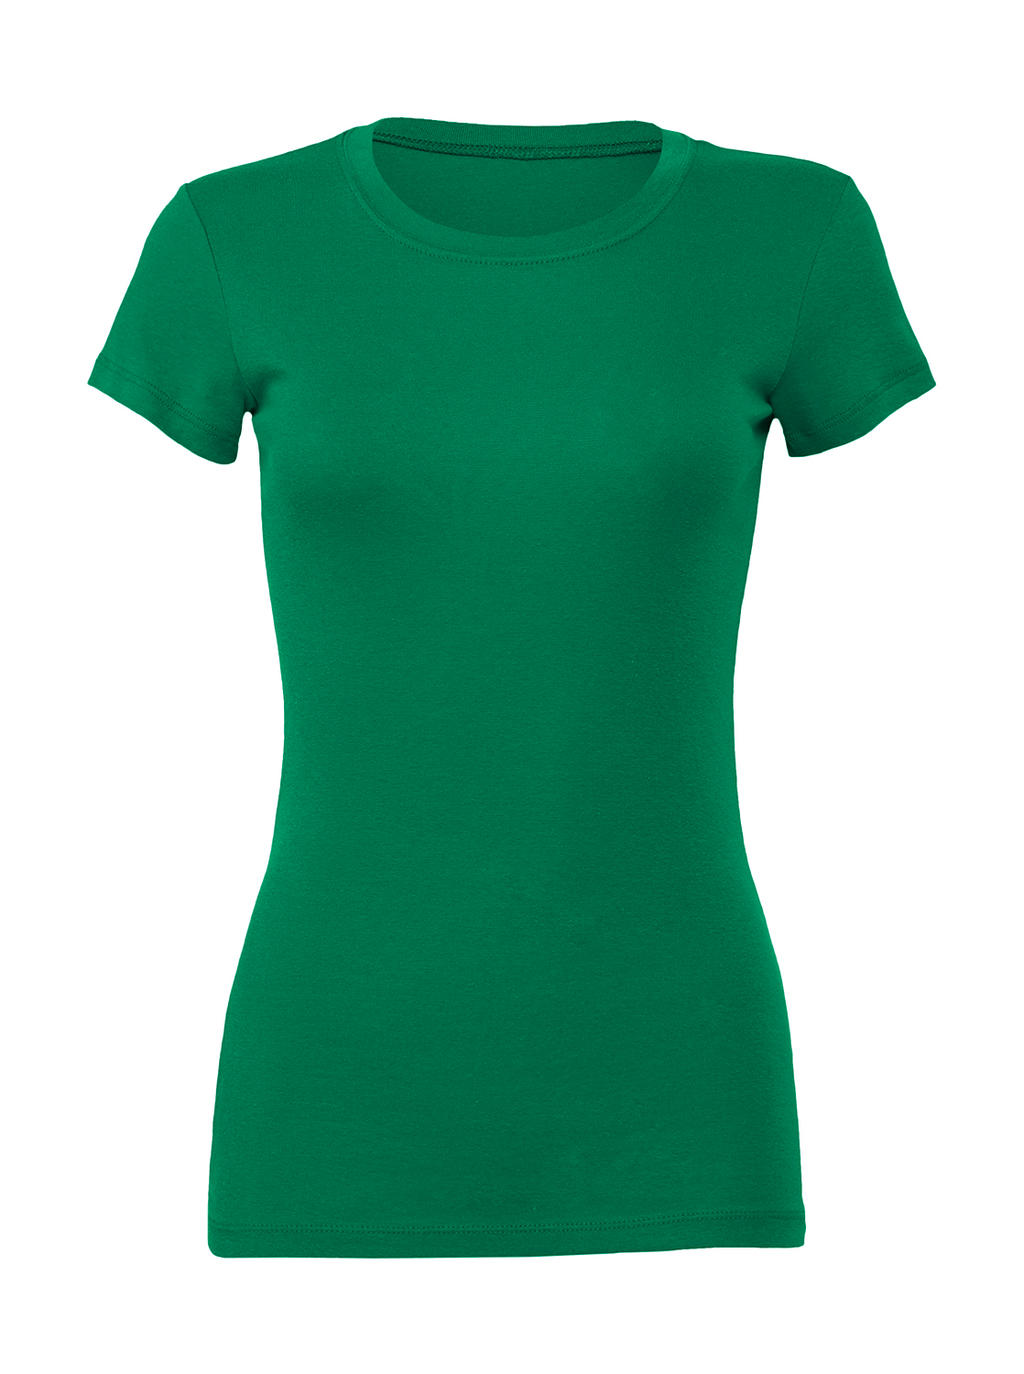 Tričko Women's Slim Fit - kelly green